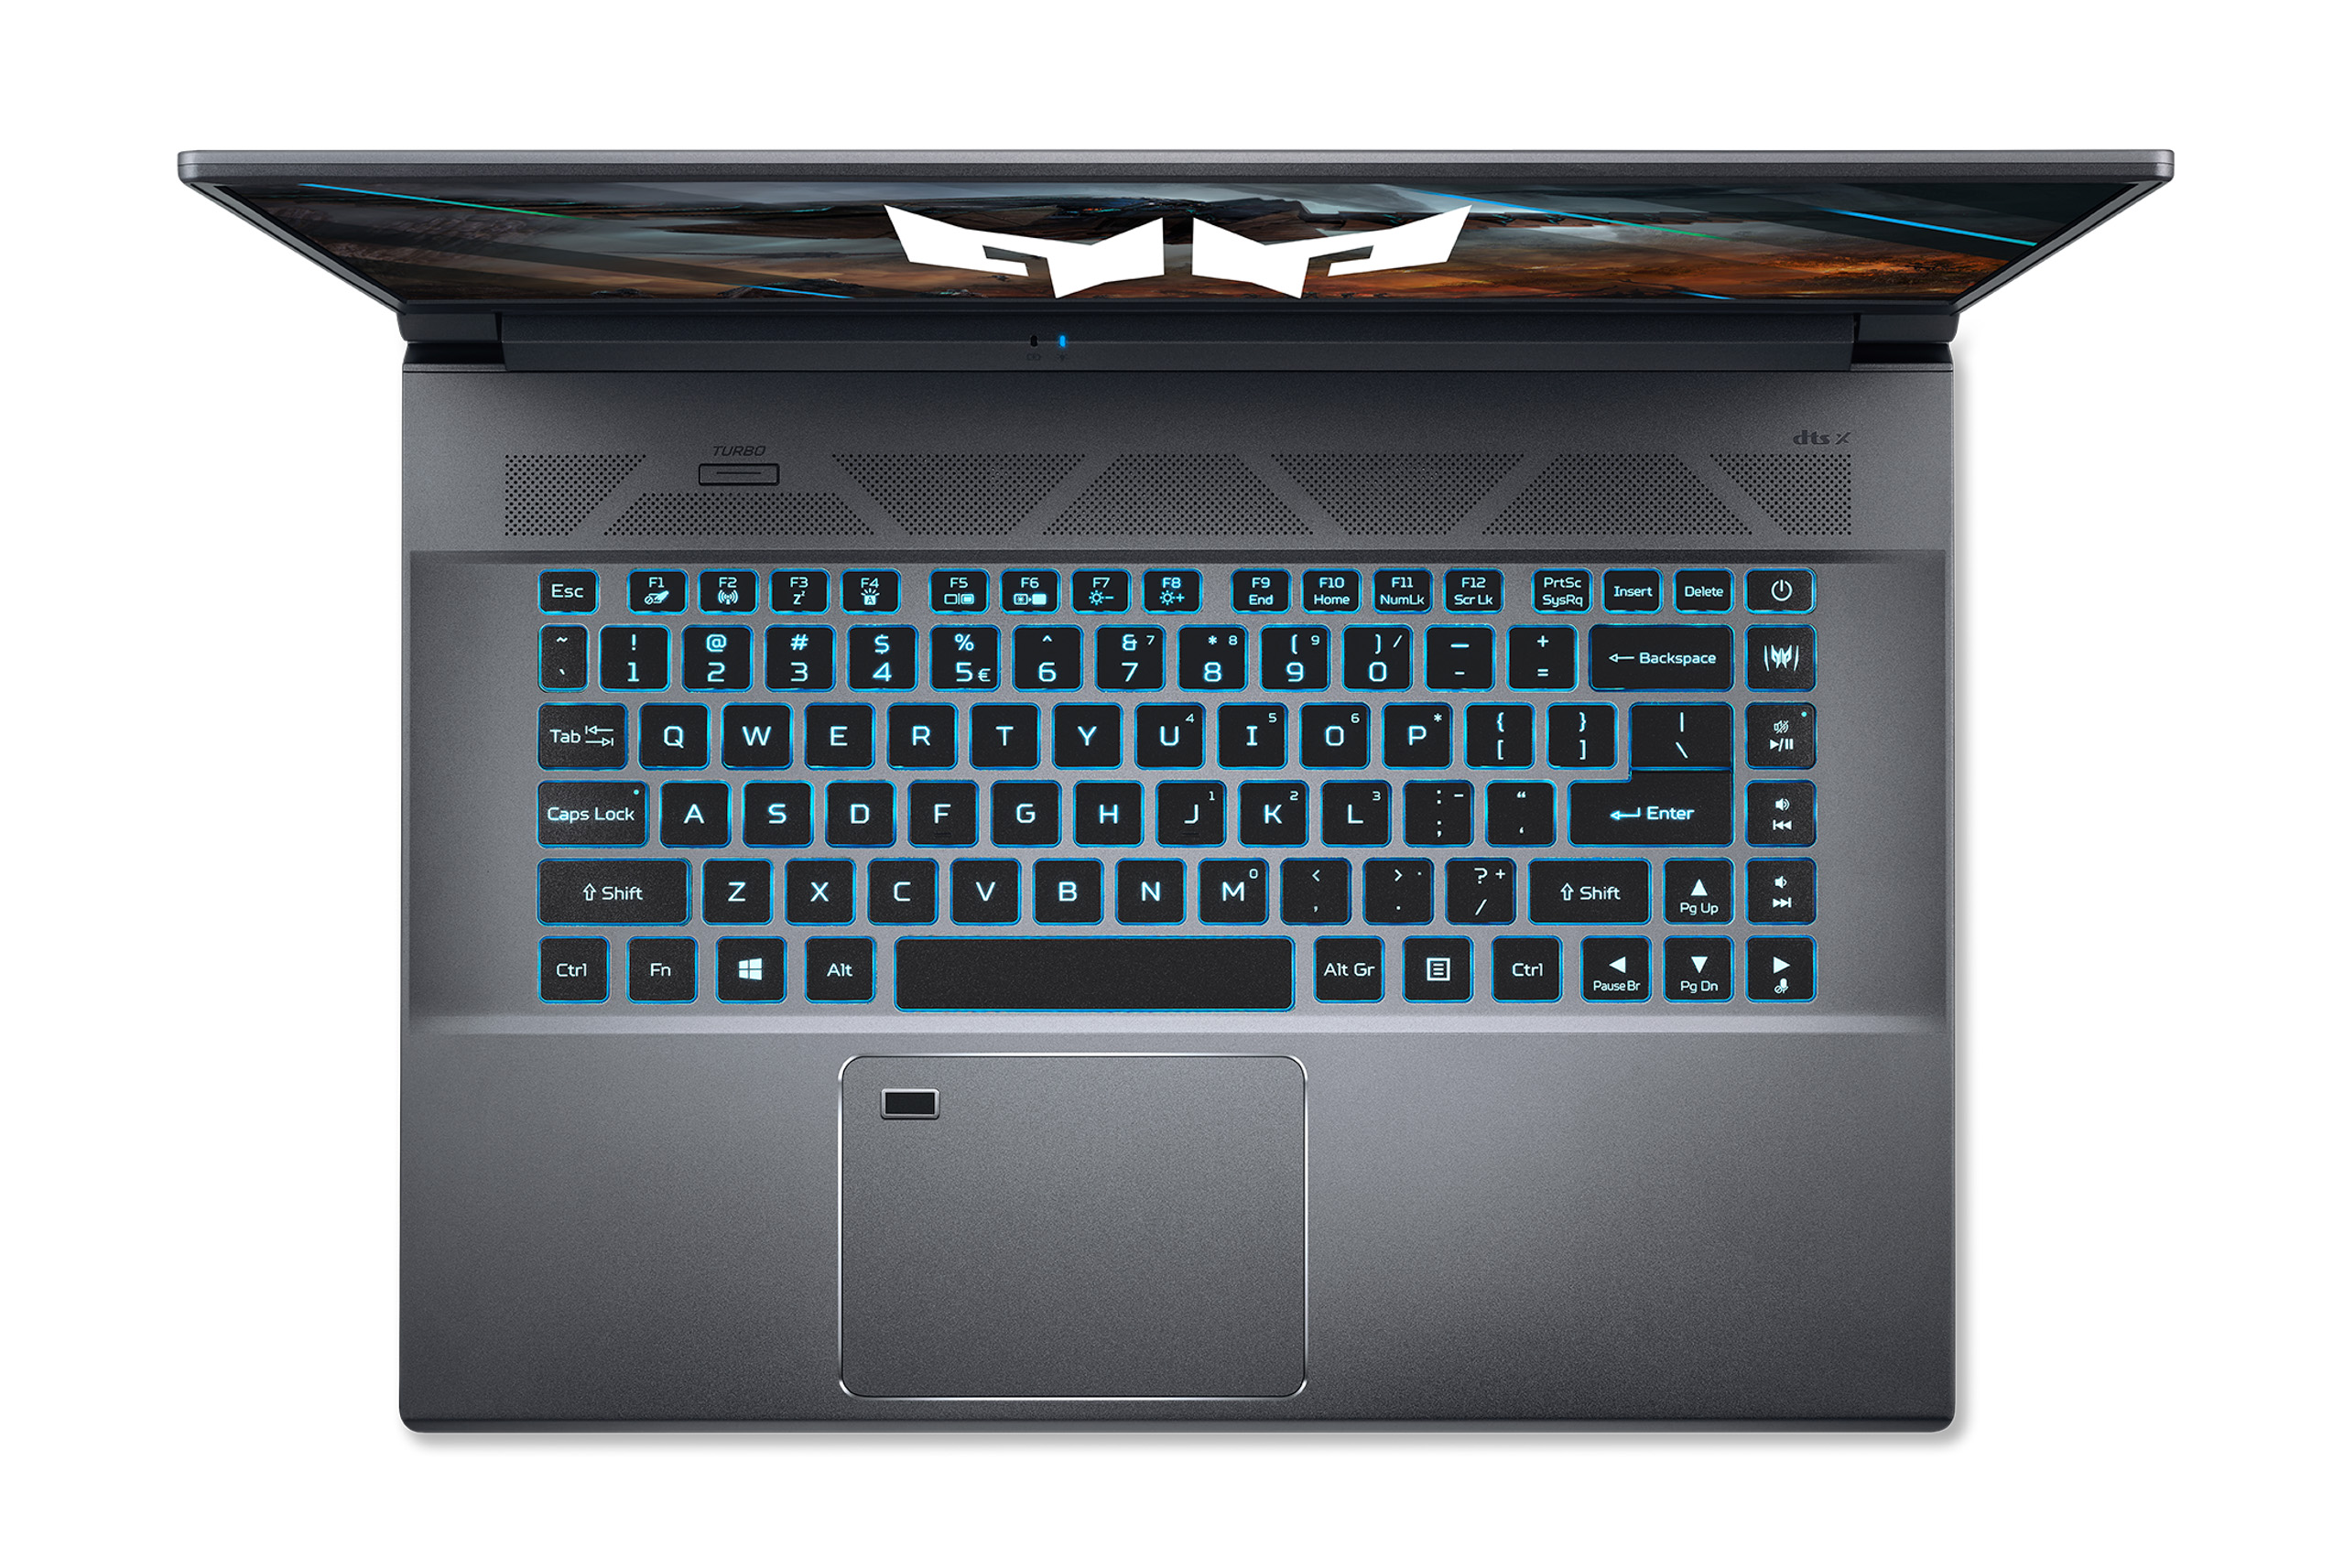 Acer ra mắt bộ đôi laptop gaming cao cấp Predator Triton 300 và Triton 500 SE